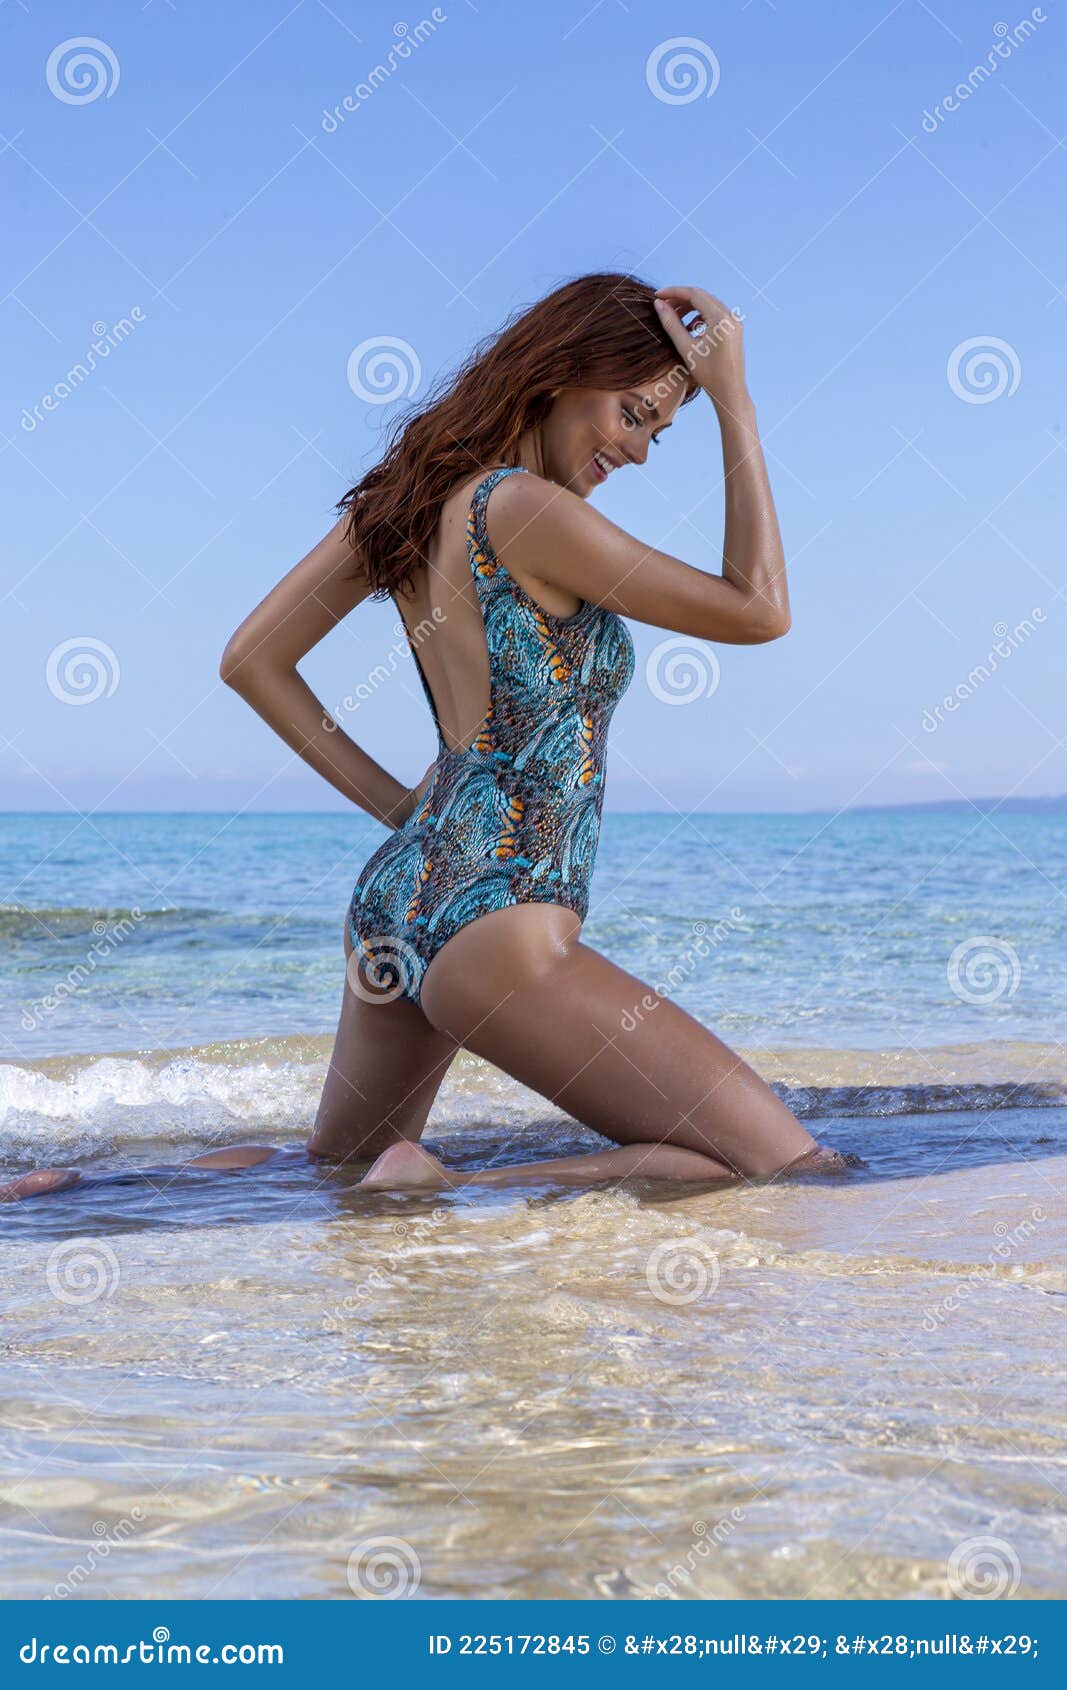 Mouni Roy Bikini Poses in Beach | Telugu Rajyam Photos